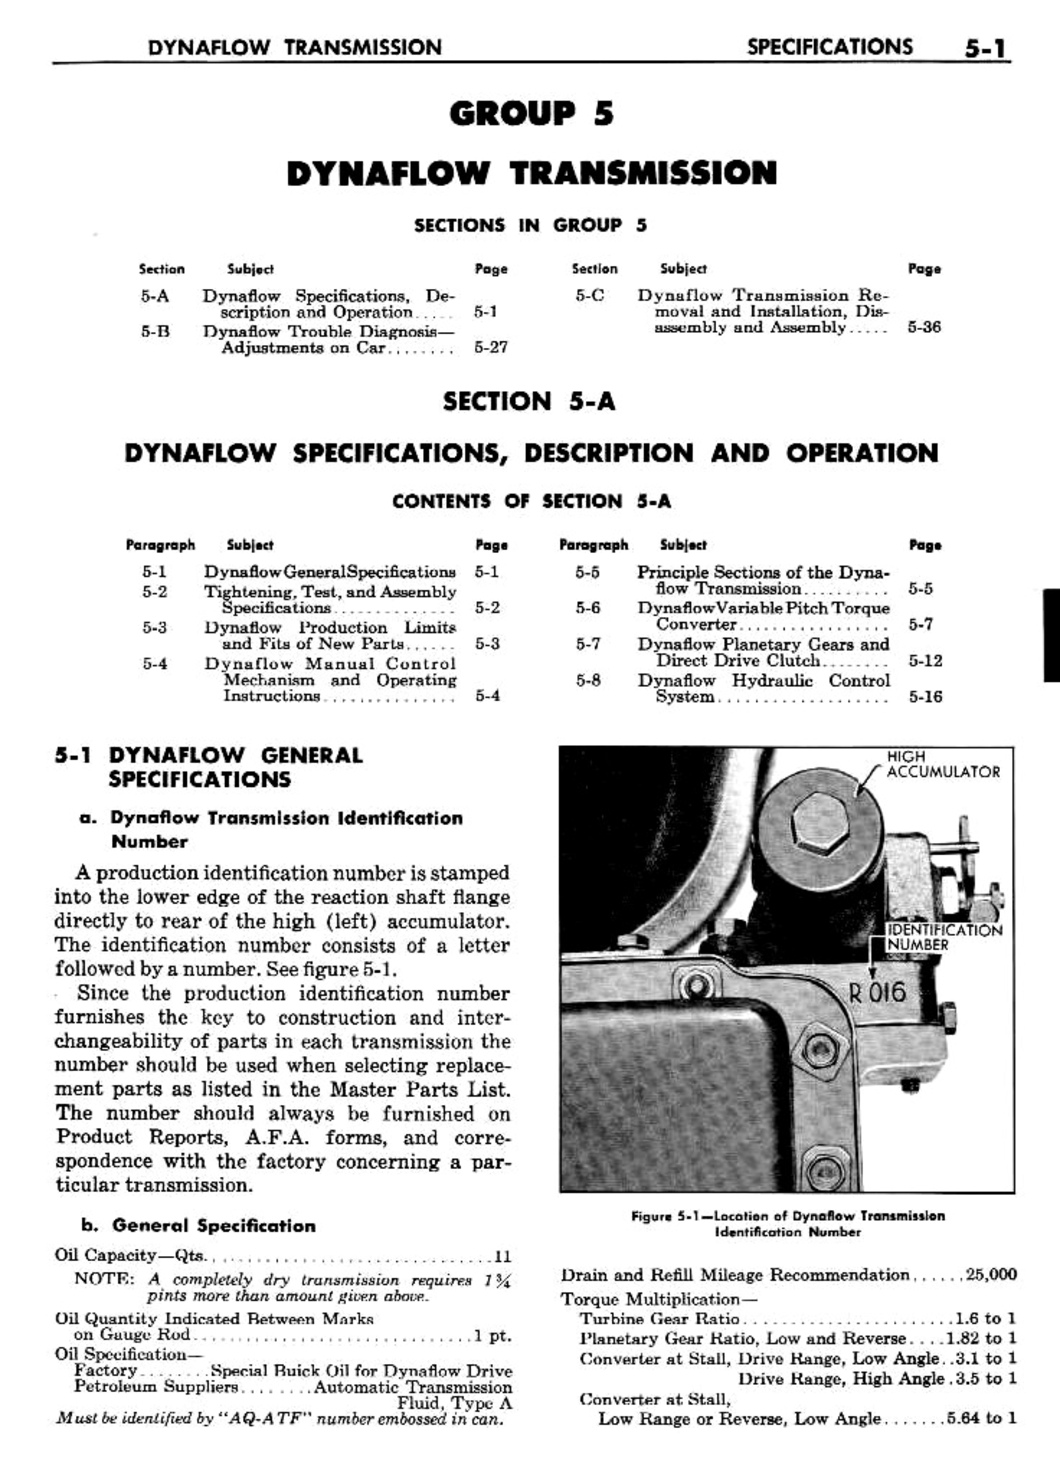 n_06 1957 Buick Shop Manual - Dynaflow-001-001.jpg